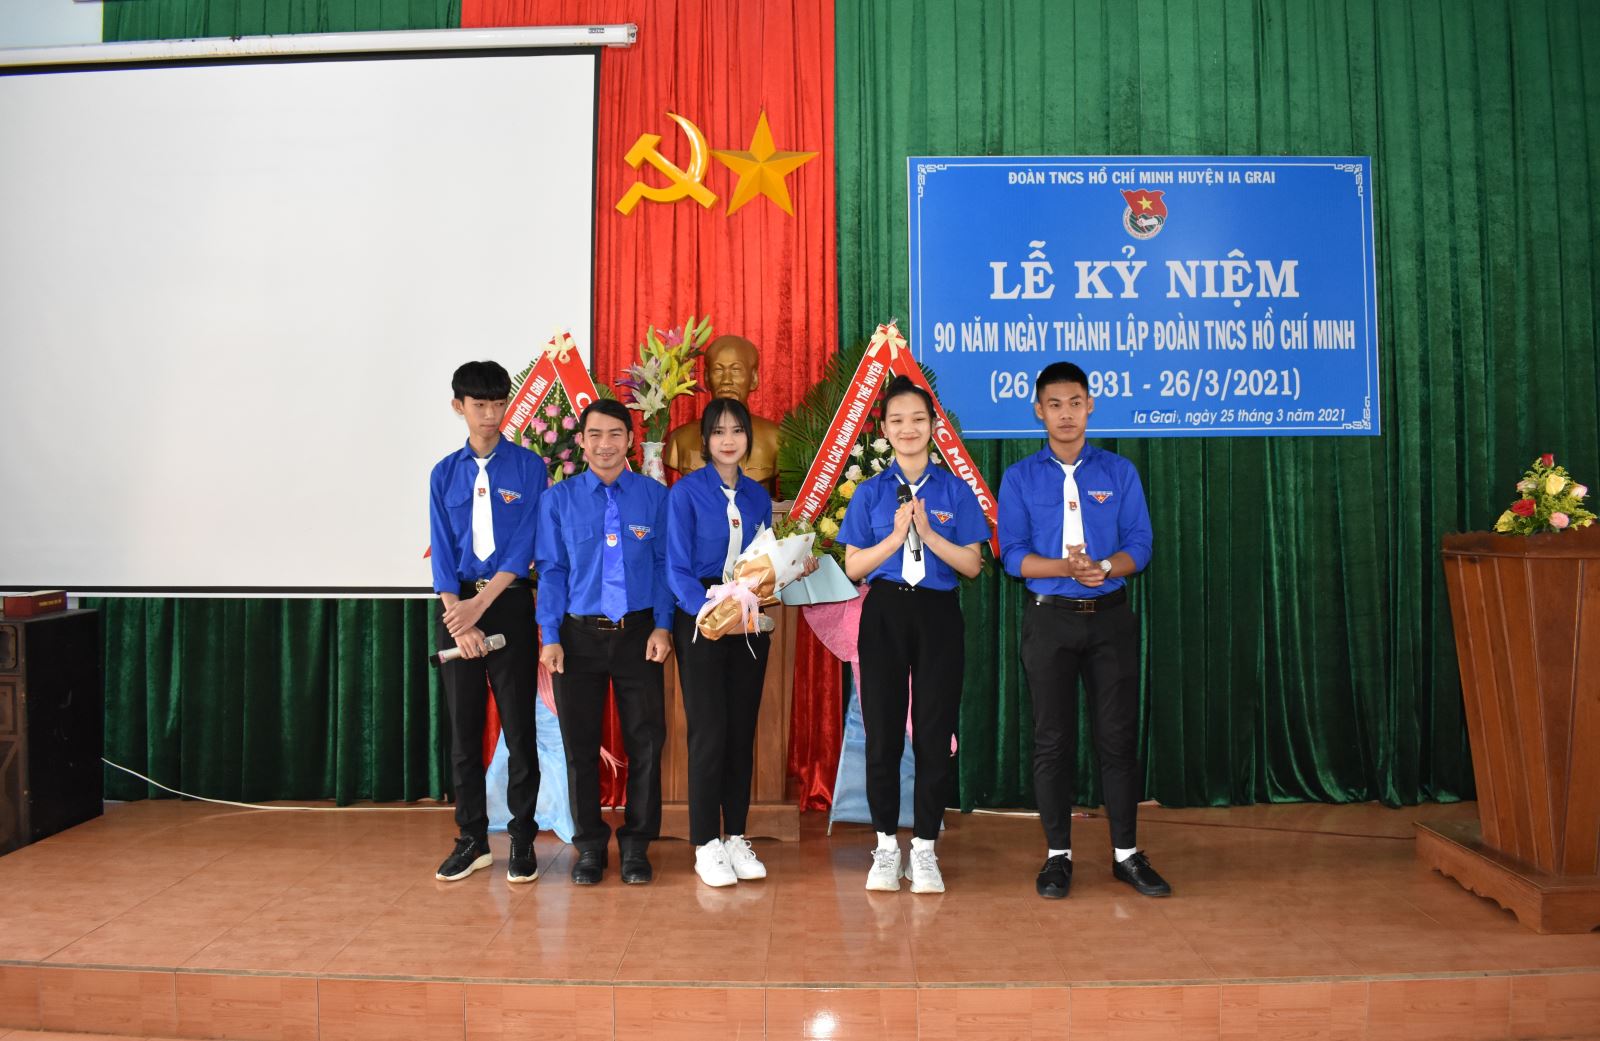 Article Tọa đàm kỷ niệm 90 năm ngày thành lập Đoàn thanh niên cộng sản Hồ Chí Minh